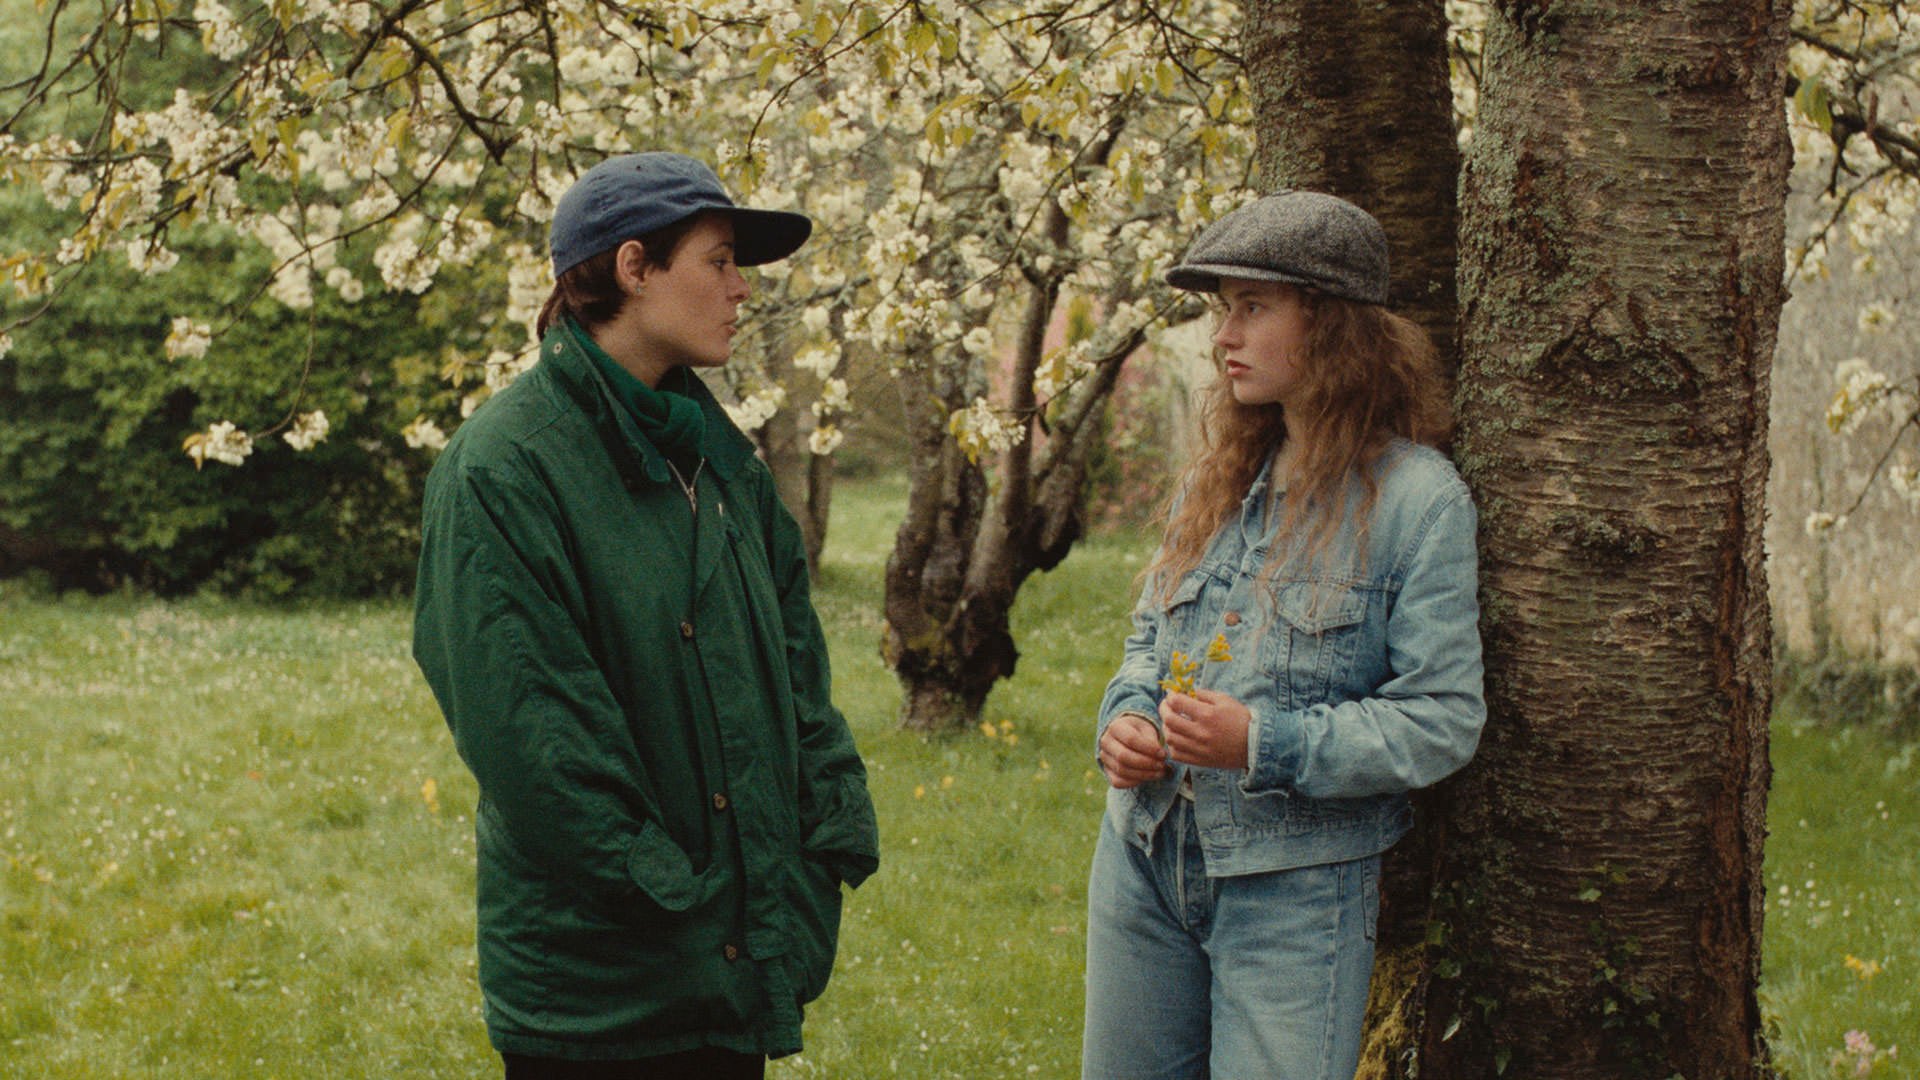 آن تسدرا در صحنه ای از فیلم A Spring Story در مقابل فلورانس دریل با درخت و گل های بهاری پشت سرشان ایستاده است.